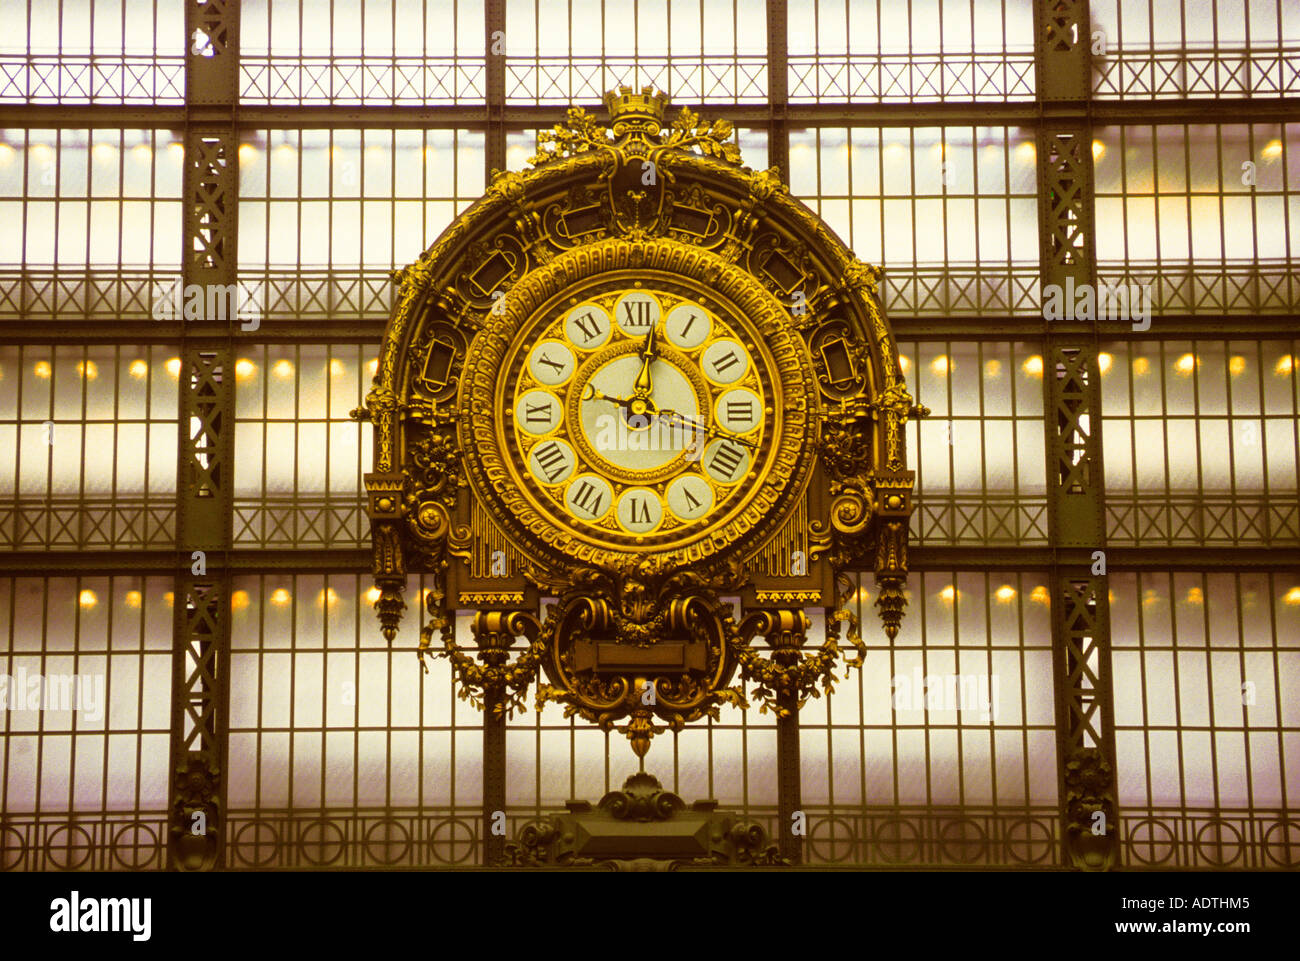 Paris Belle Epoque Musee D'Orsay orologio interno. Storica ex stazione ferroviaria Gare D'Orsay. Rive della Senna sito patrimonio mondiale dell'UNESCO. Francia Foto Stock